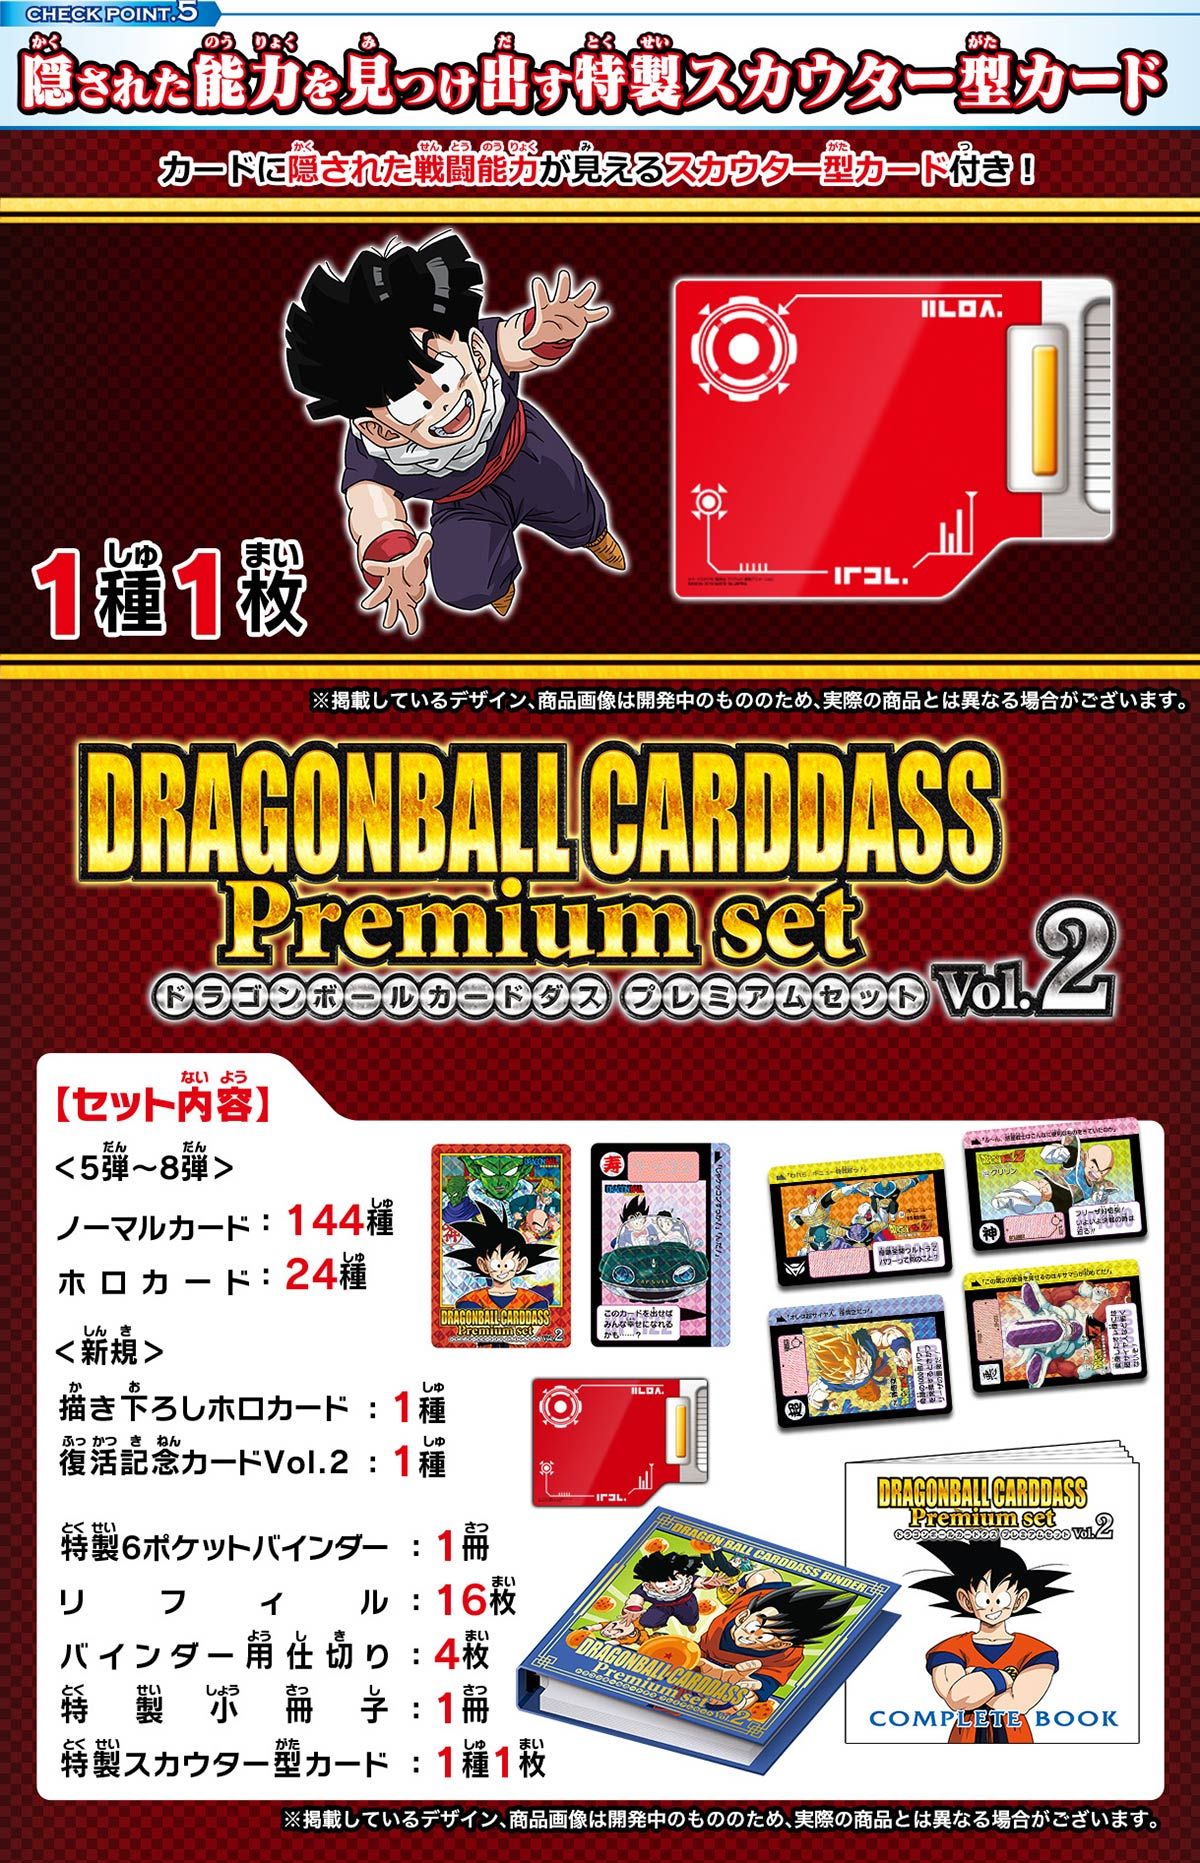 ドラゴンボールカードダス Premium set Vol.2 | ドラゴンボール 